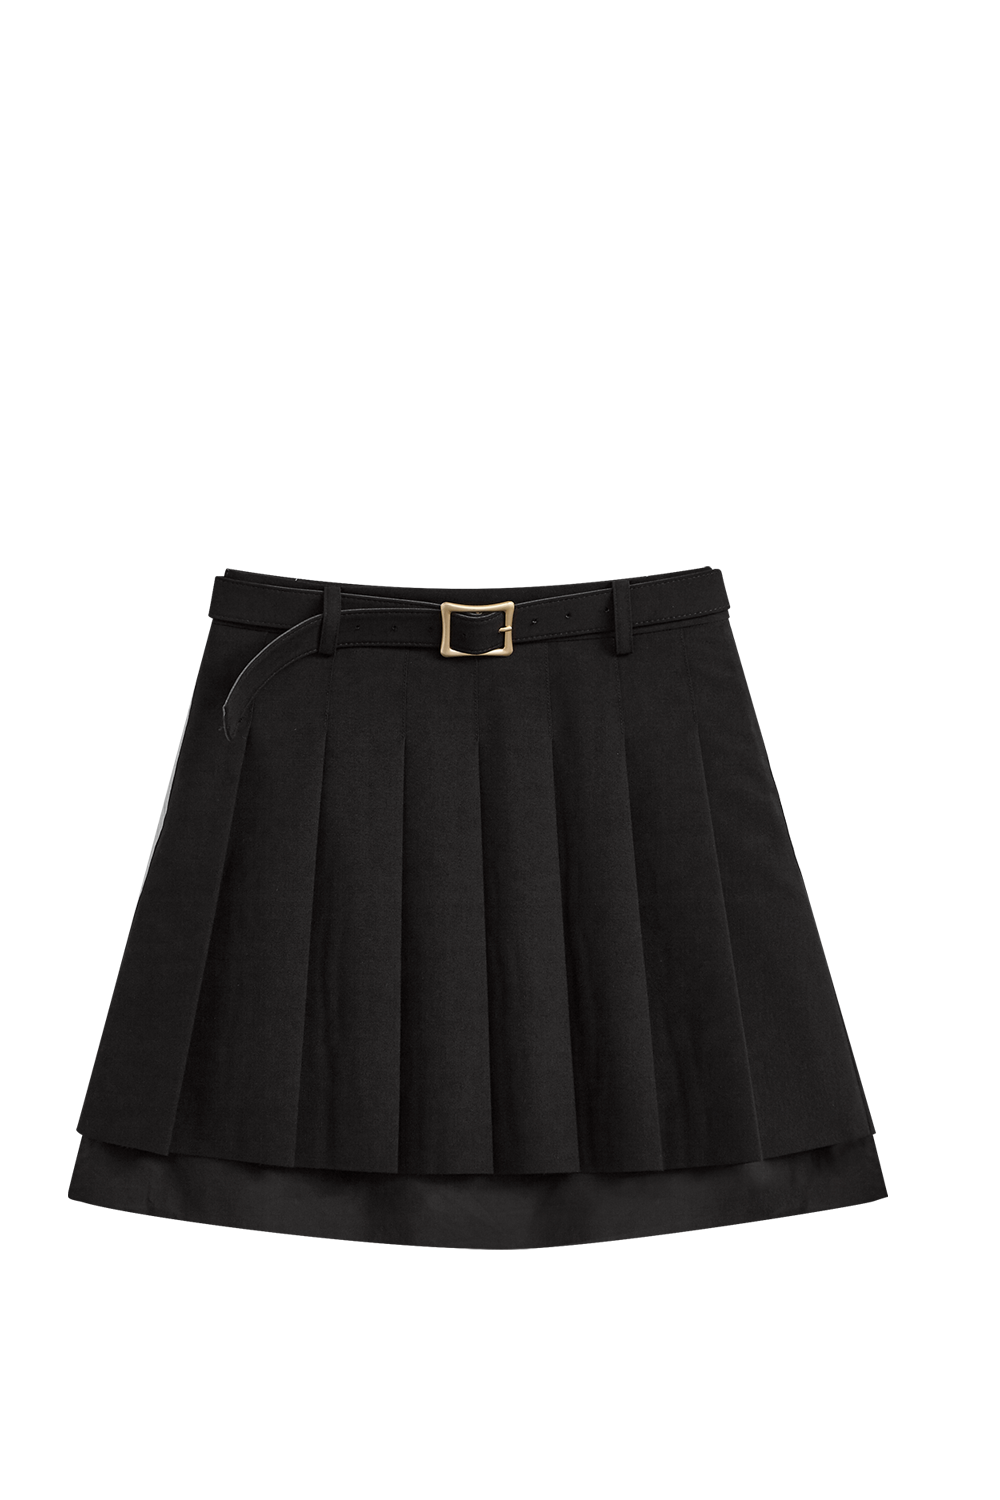  Summer high waist simple patchwork skirt 